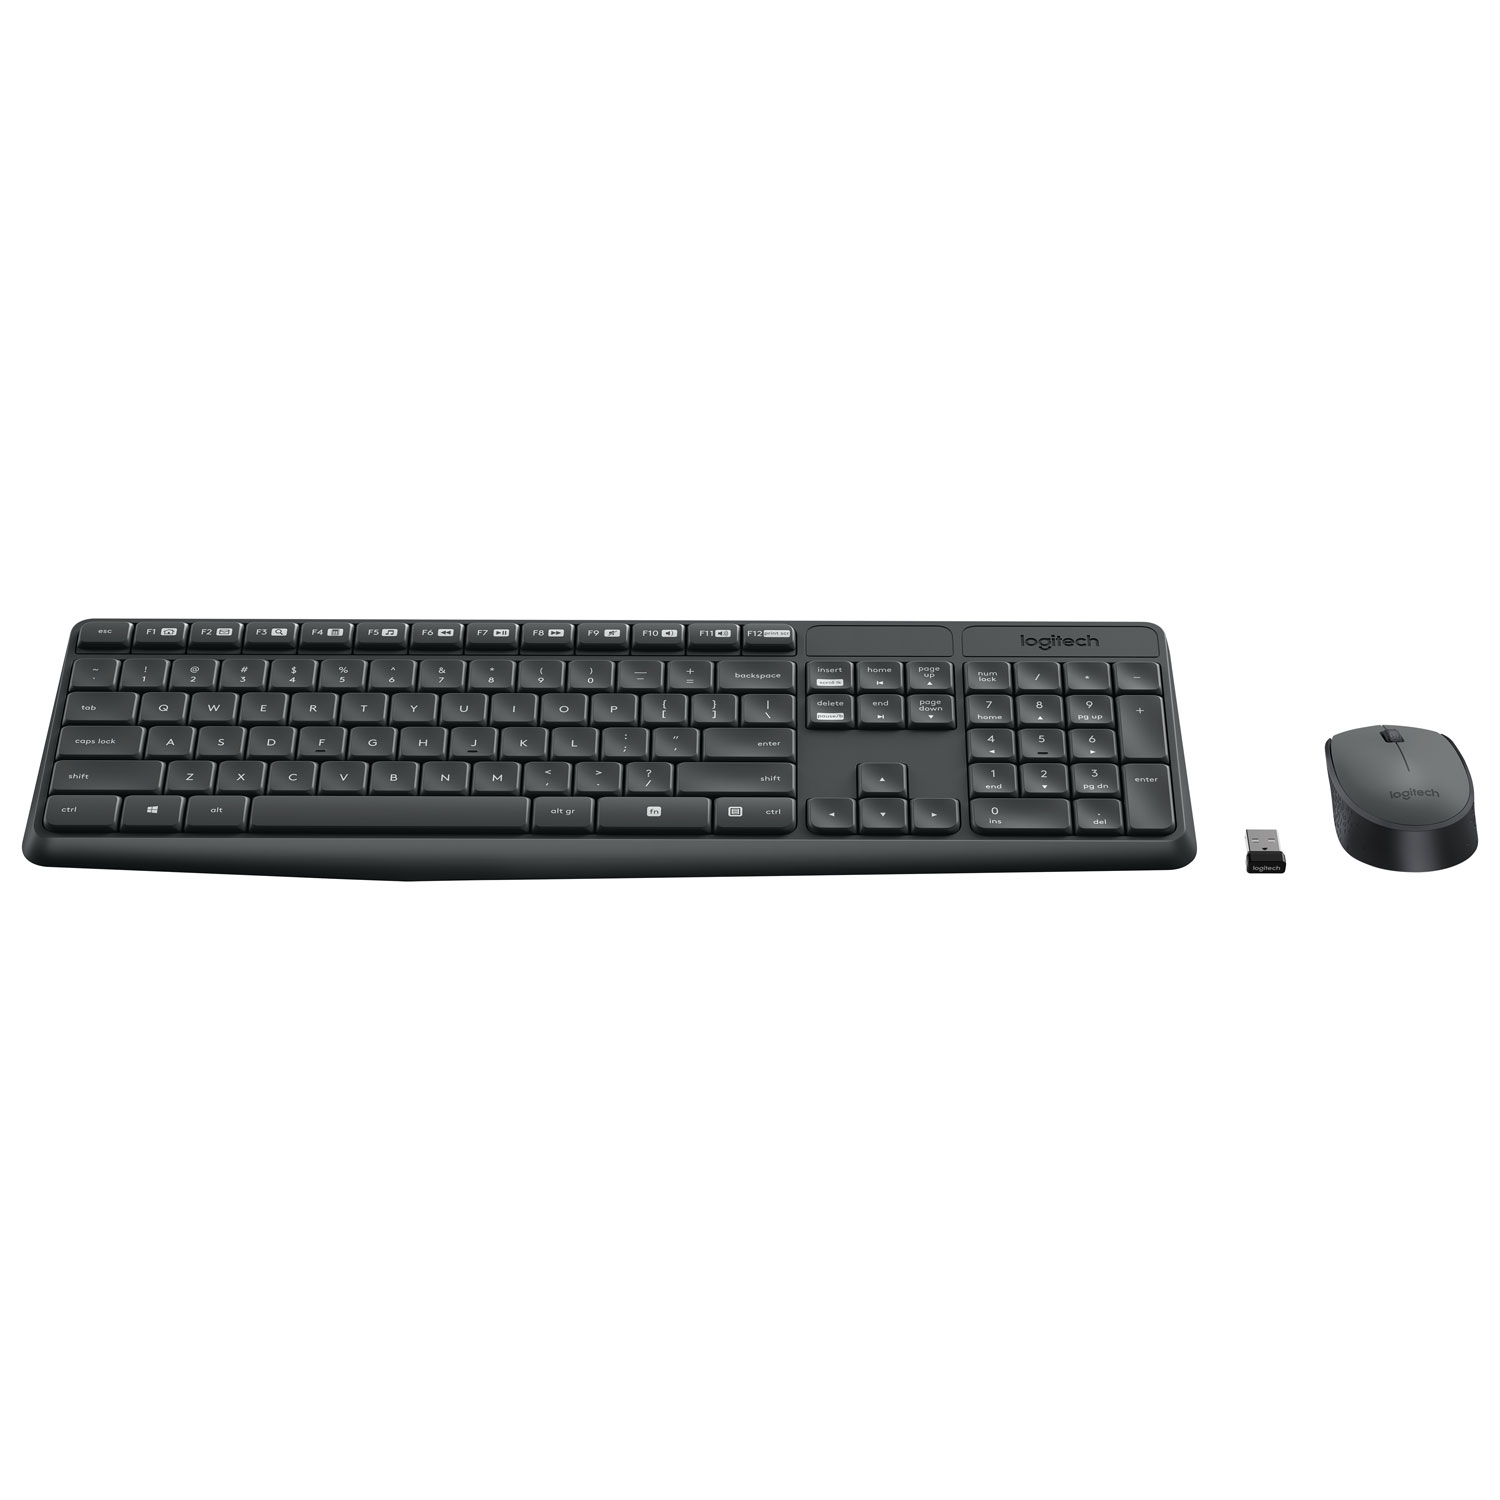 Logitech MK235 Wireless Optical Keyboard & Mouse Combo - English